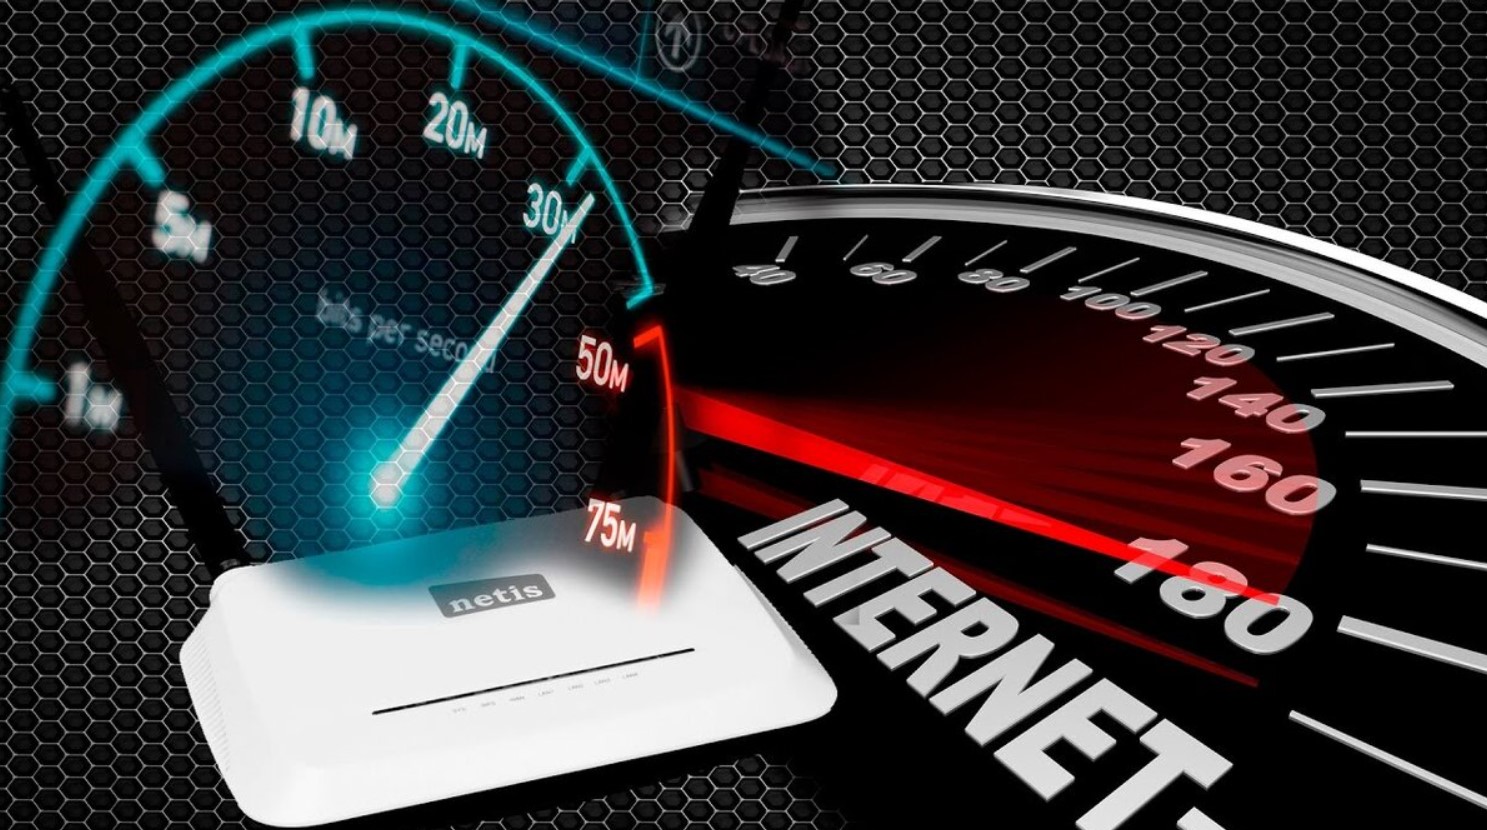 Картинки скорость интернета